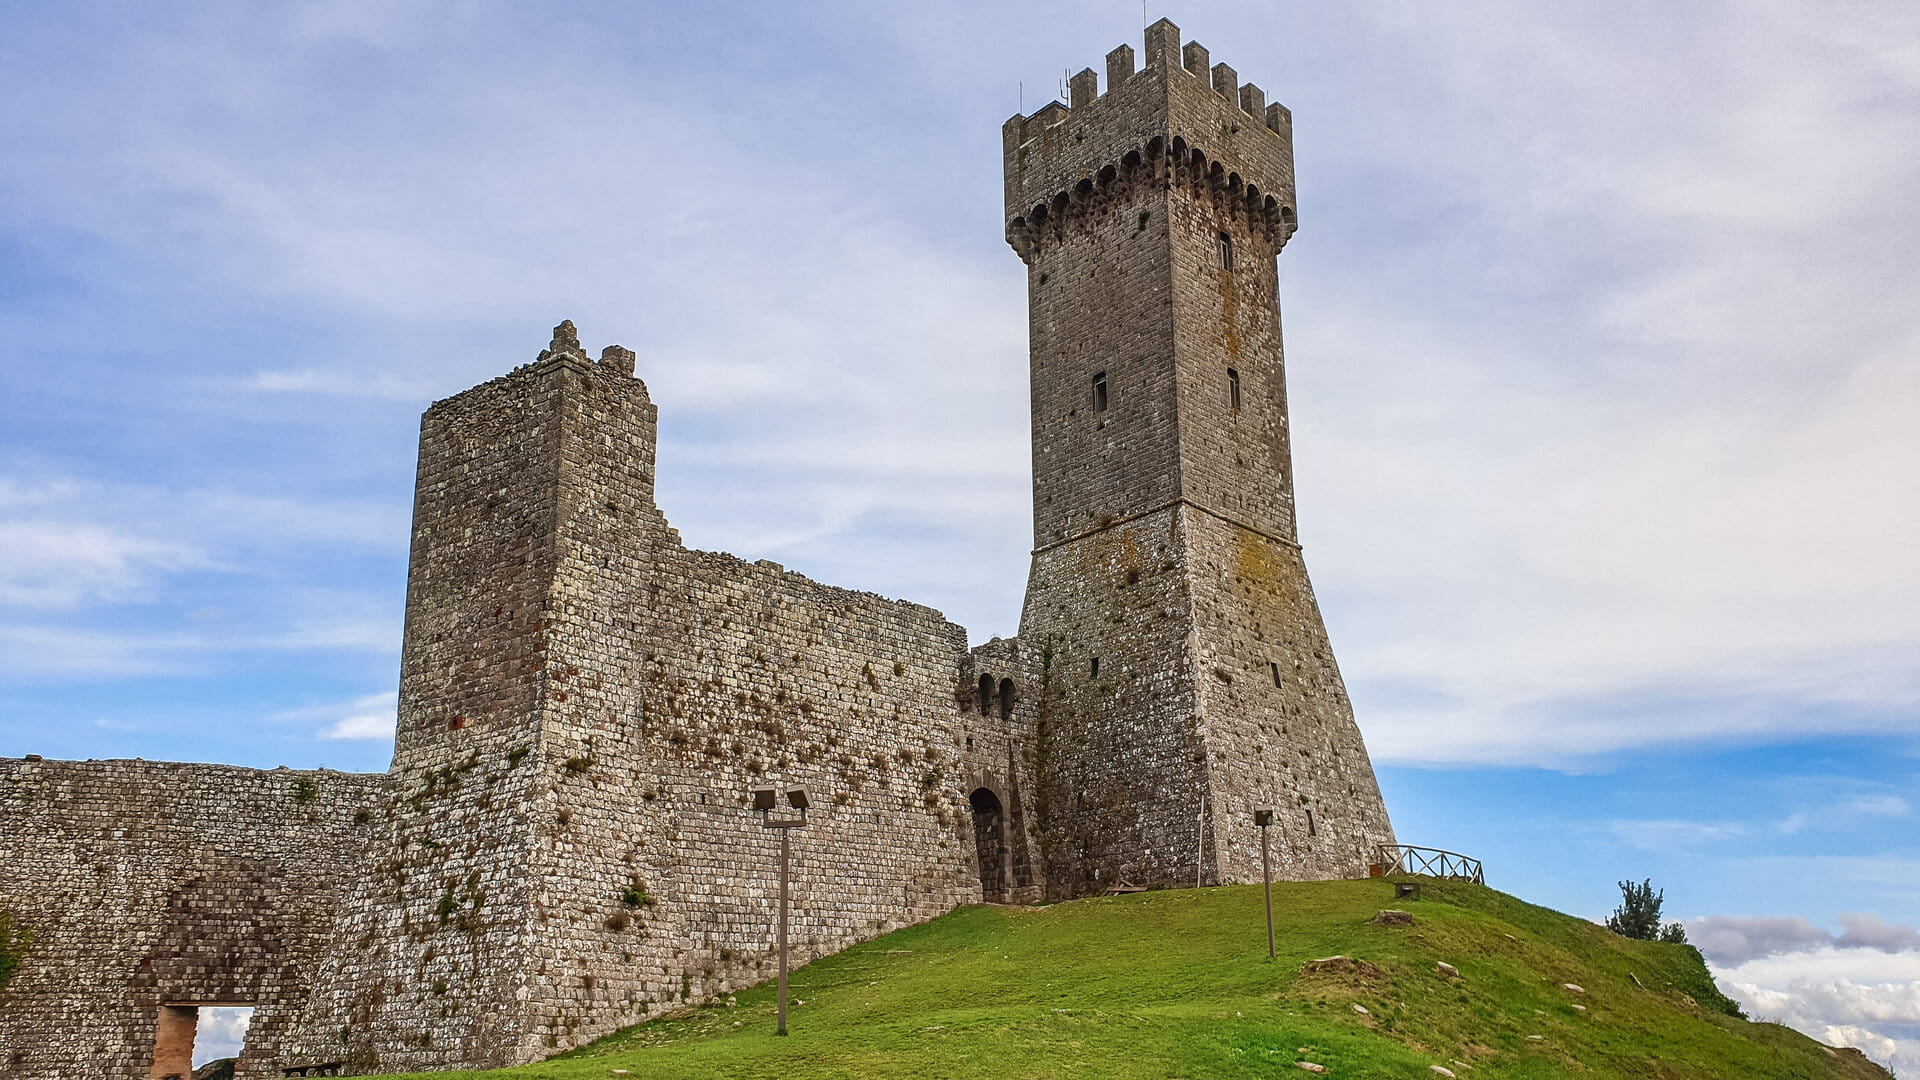 L'alto mastio dell'antico castello di Radicofani che si staglia su un cielo azzurro sereno e si appoggia su un colle verde. Accanto i resti ancora in piedi delle mura difensive.